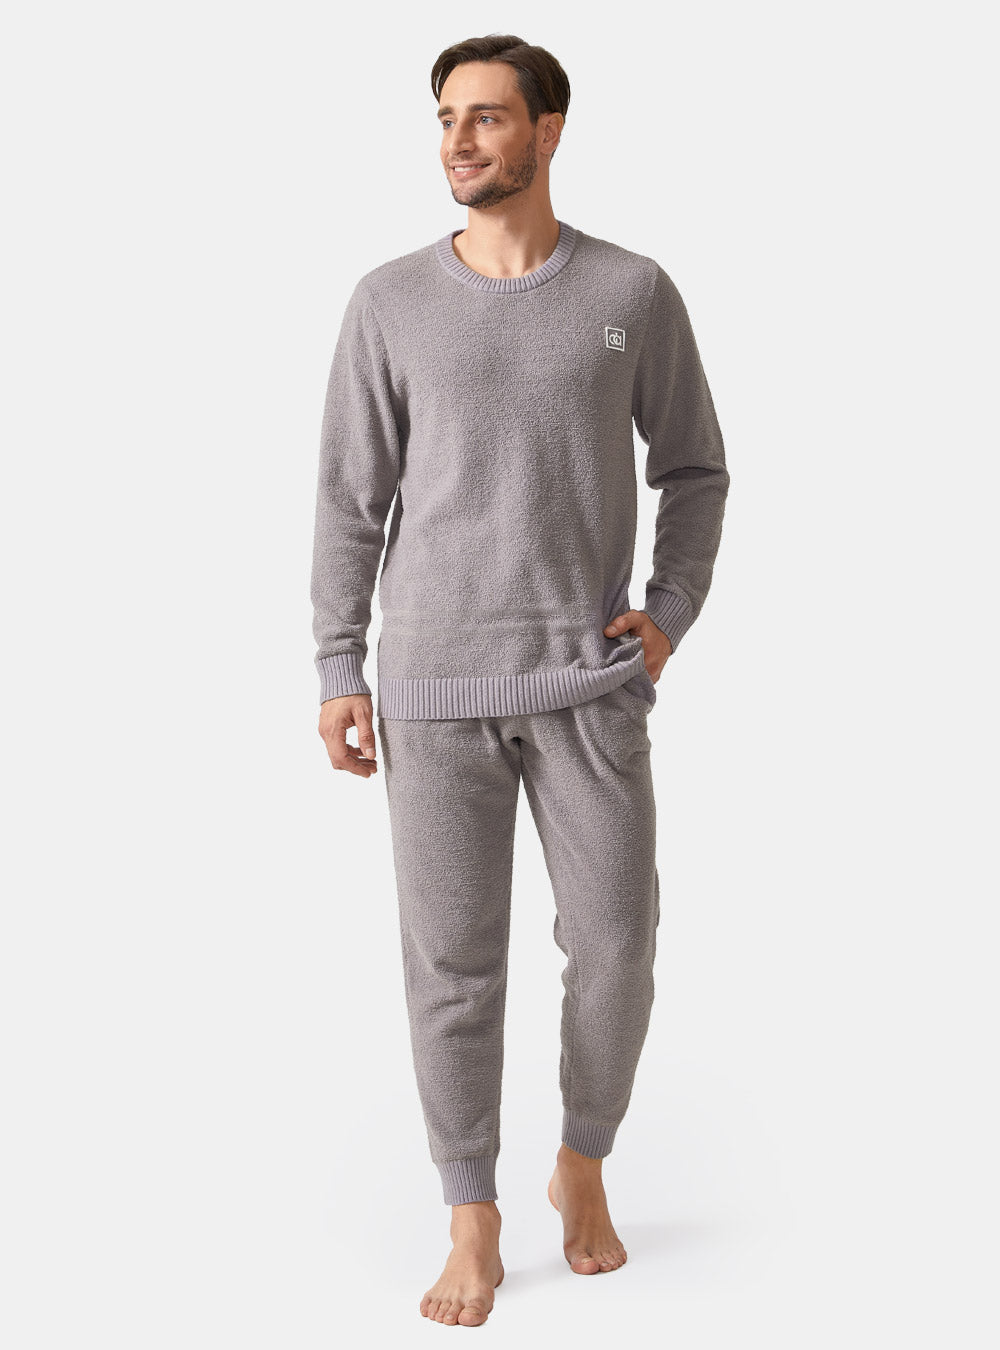 Mens Designer Pajamas for Men Sleepwear Set Pijama Set Long Sleeve